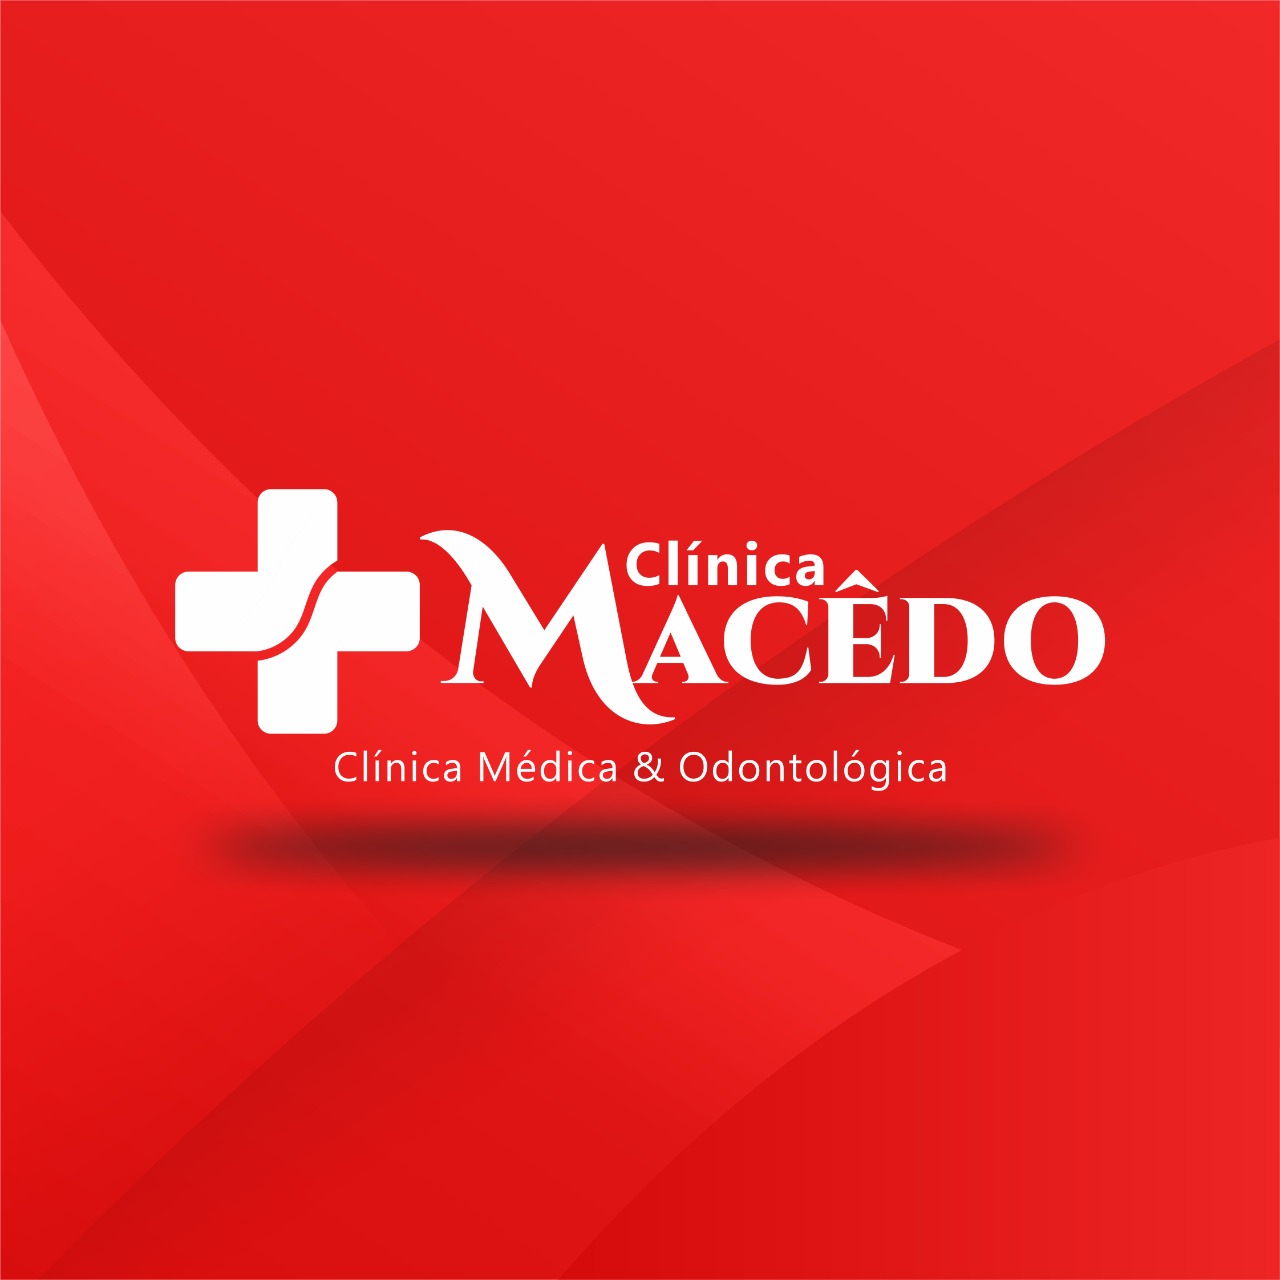 CLINICA MACÊDO - CLINICA MEDICA & ODONTOLÓGICA